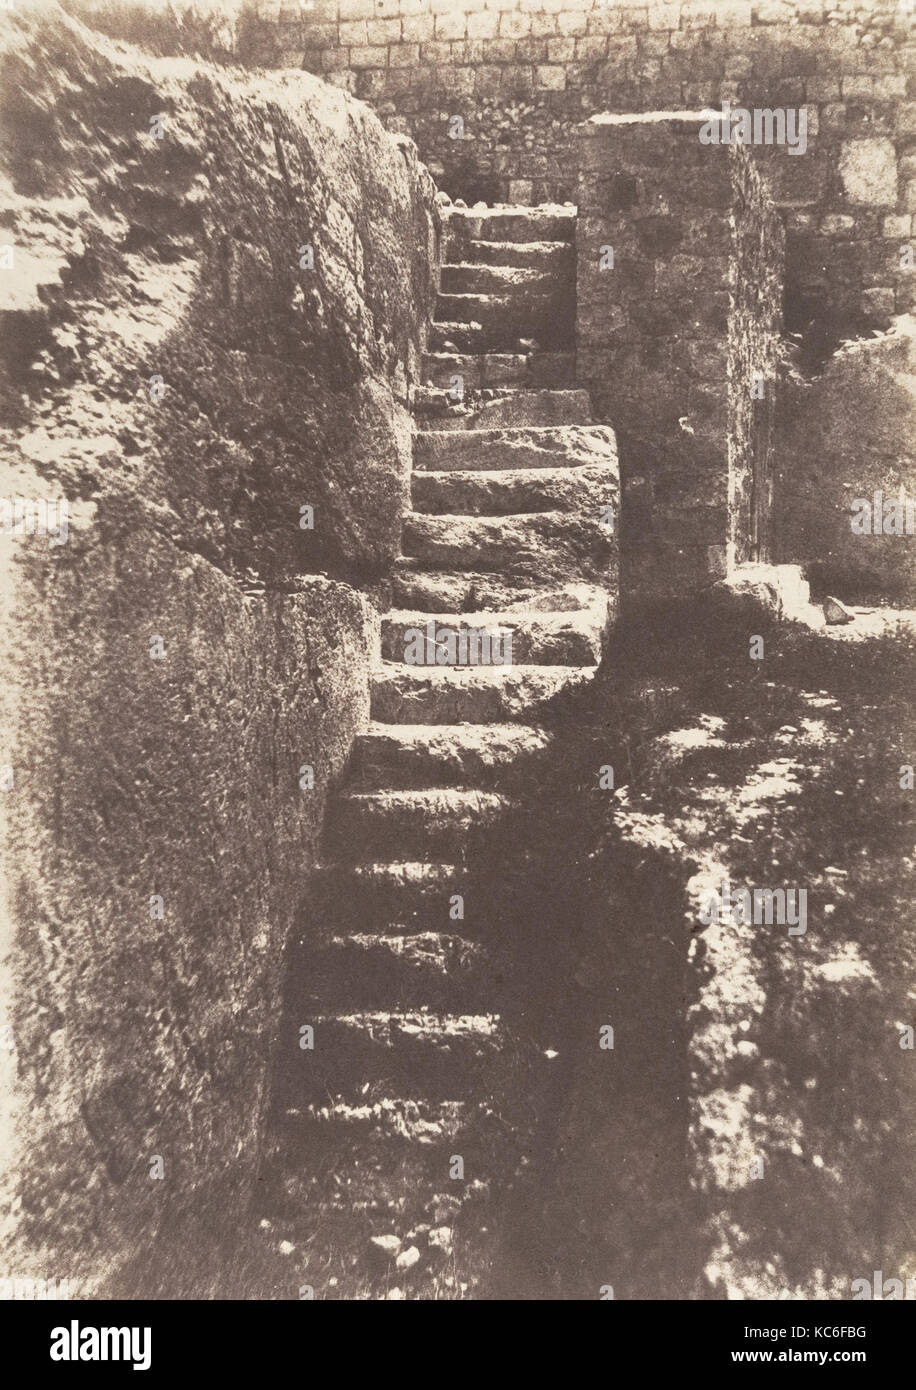 Jérusalem, Escalier antique taillé dans le roc, conduisant à l'ancienne Porte du Fumier, Auguste Salzmann, 1854 Stock Photo